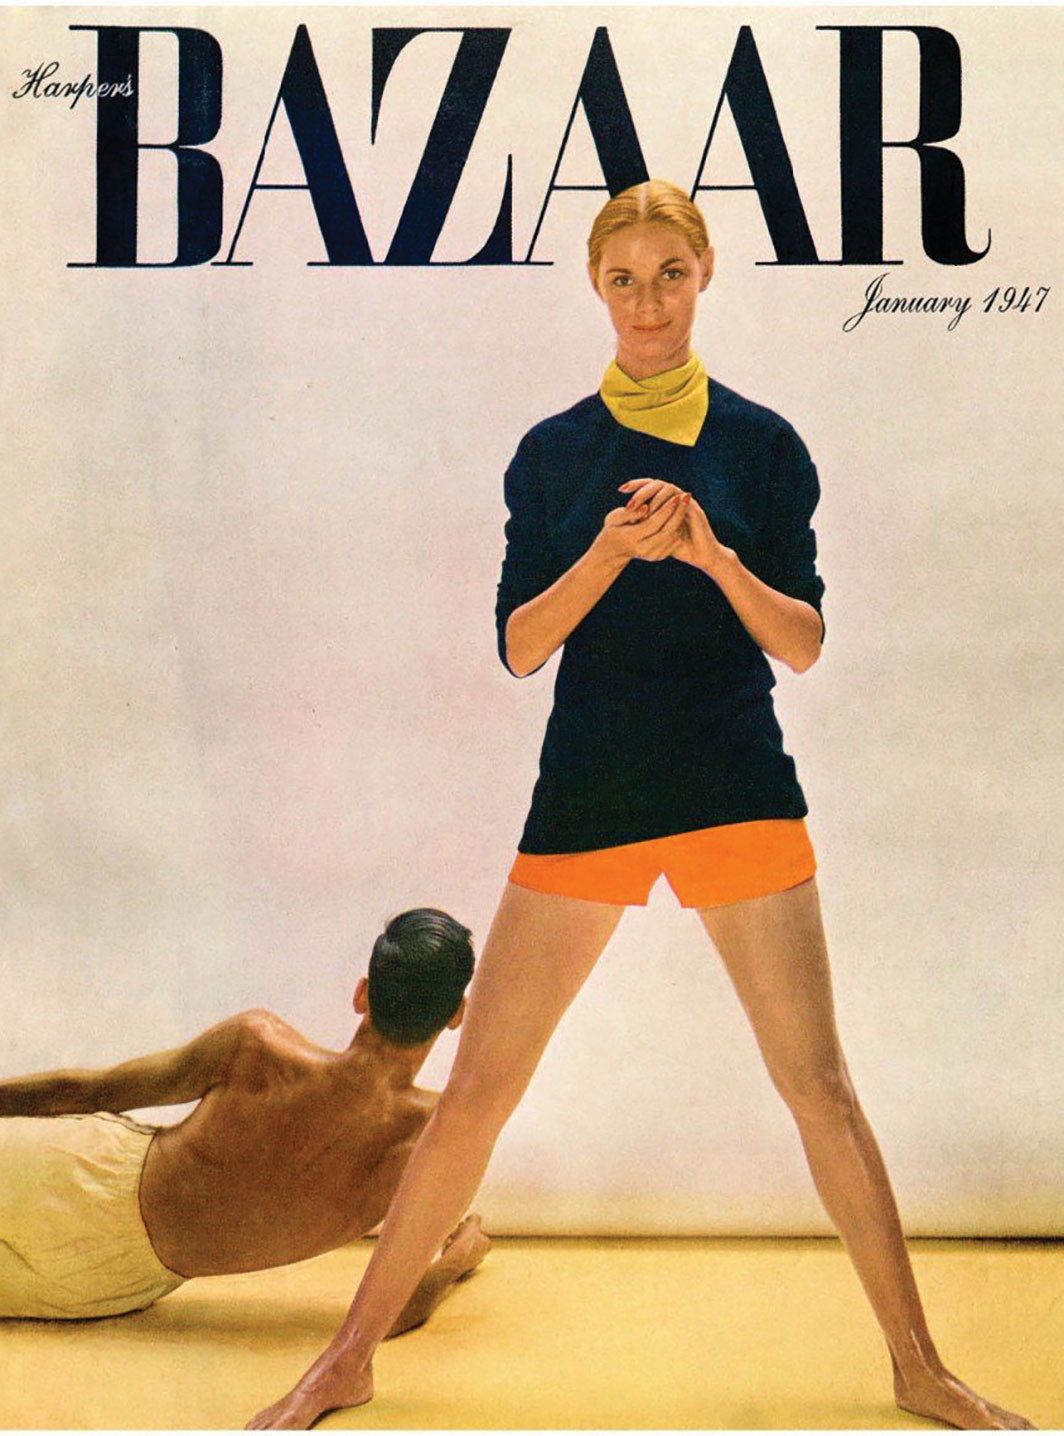 Richard Avedon’s cover image for Harper’s Bazaar, January 1947. © The Richard Avedon Foundation